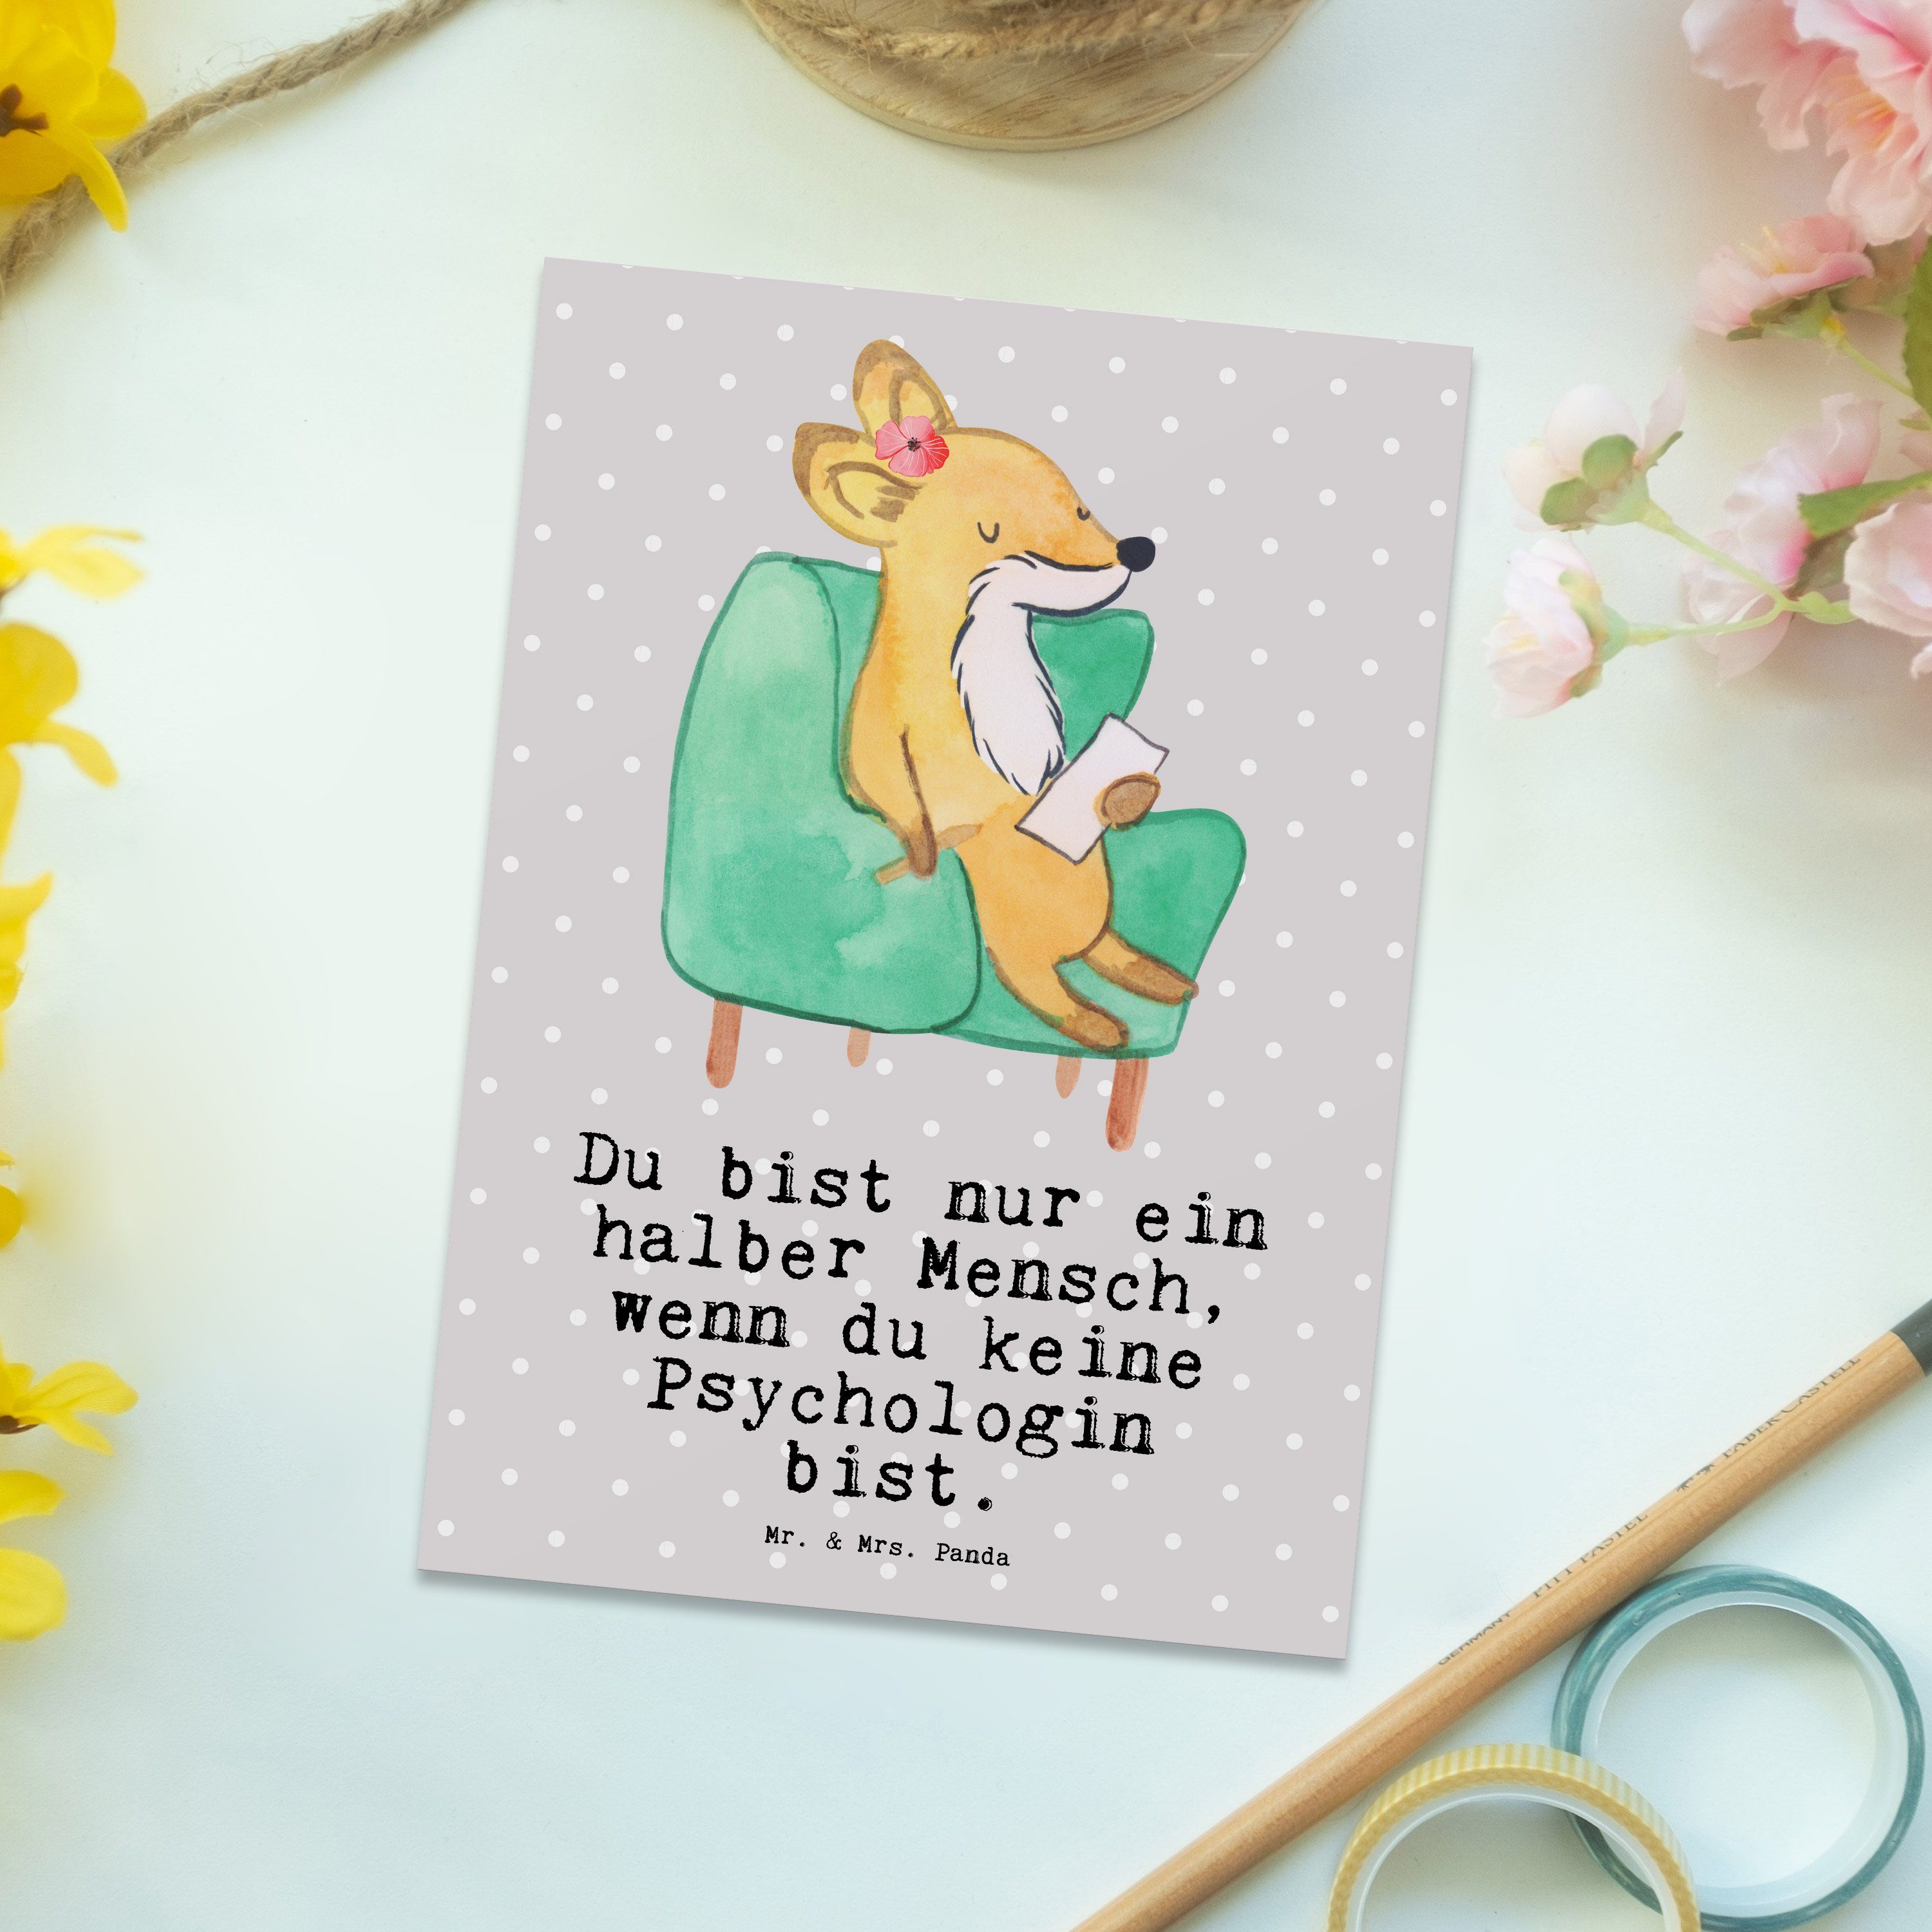 Psychologin Panda Firma, Mr. Postkarte Mrs. Einladu & Herz mit - - Karte, Geschenk, Grau Pastell